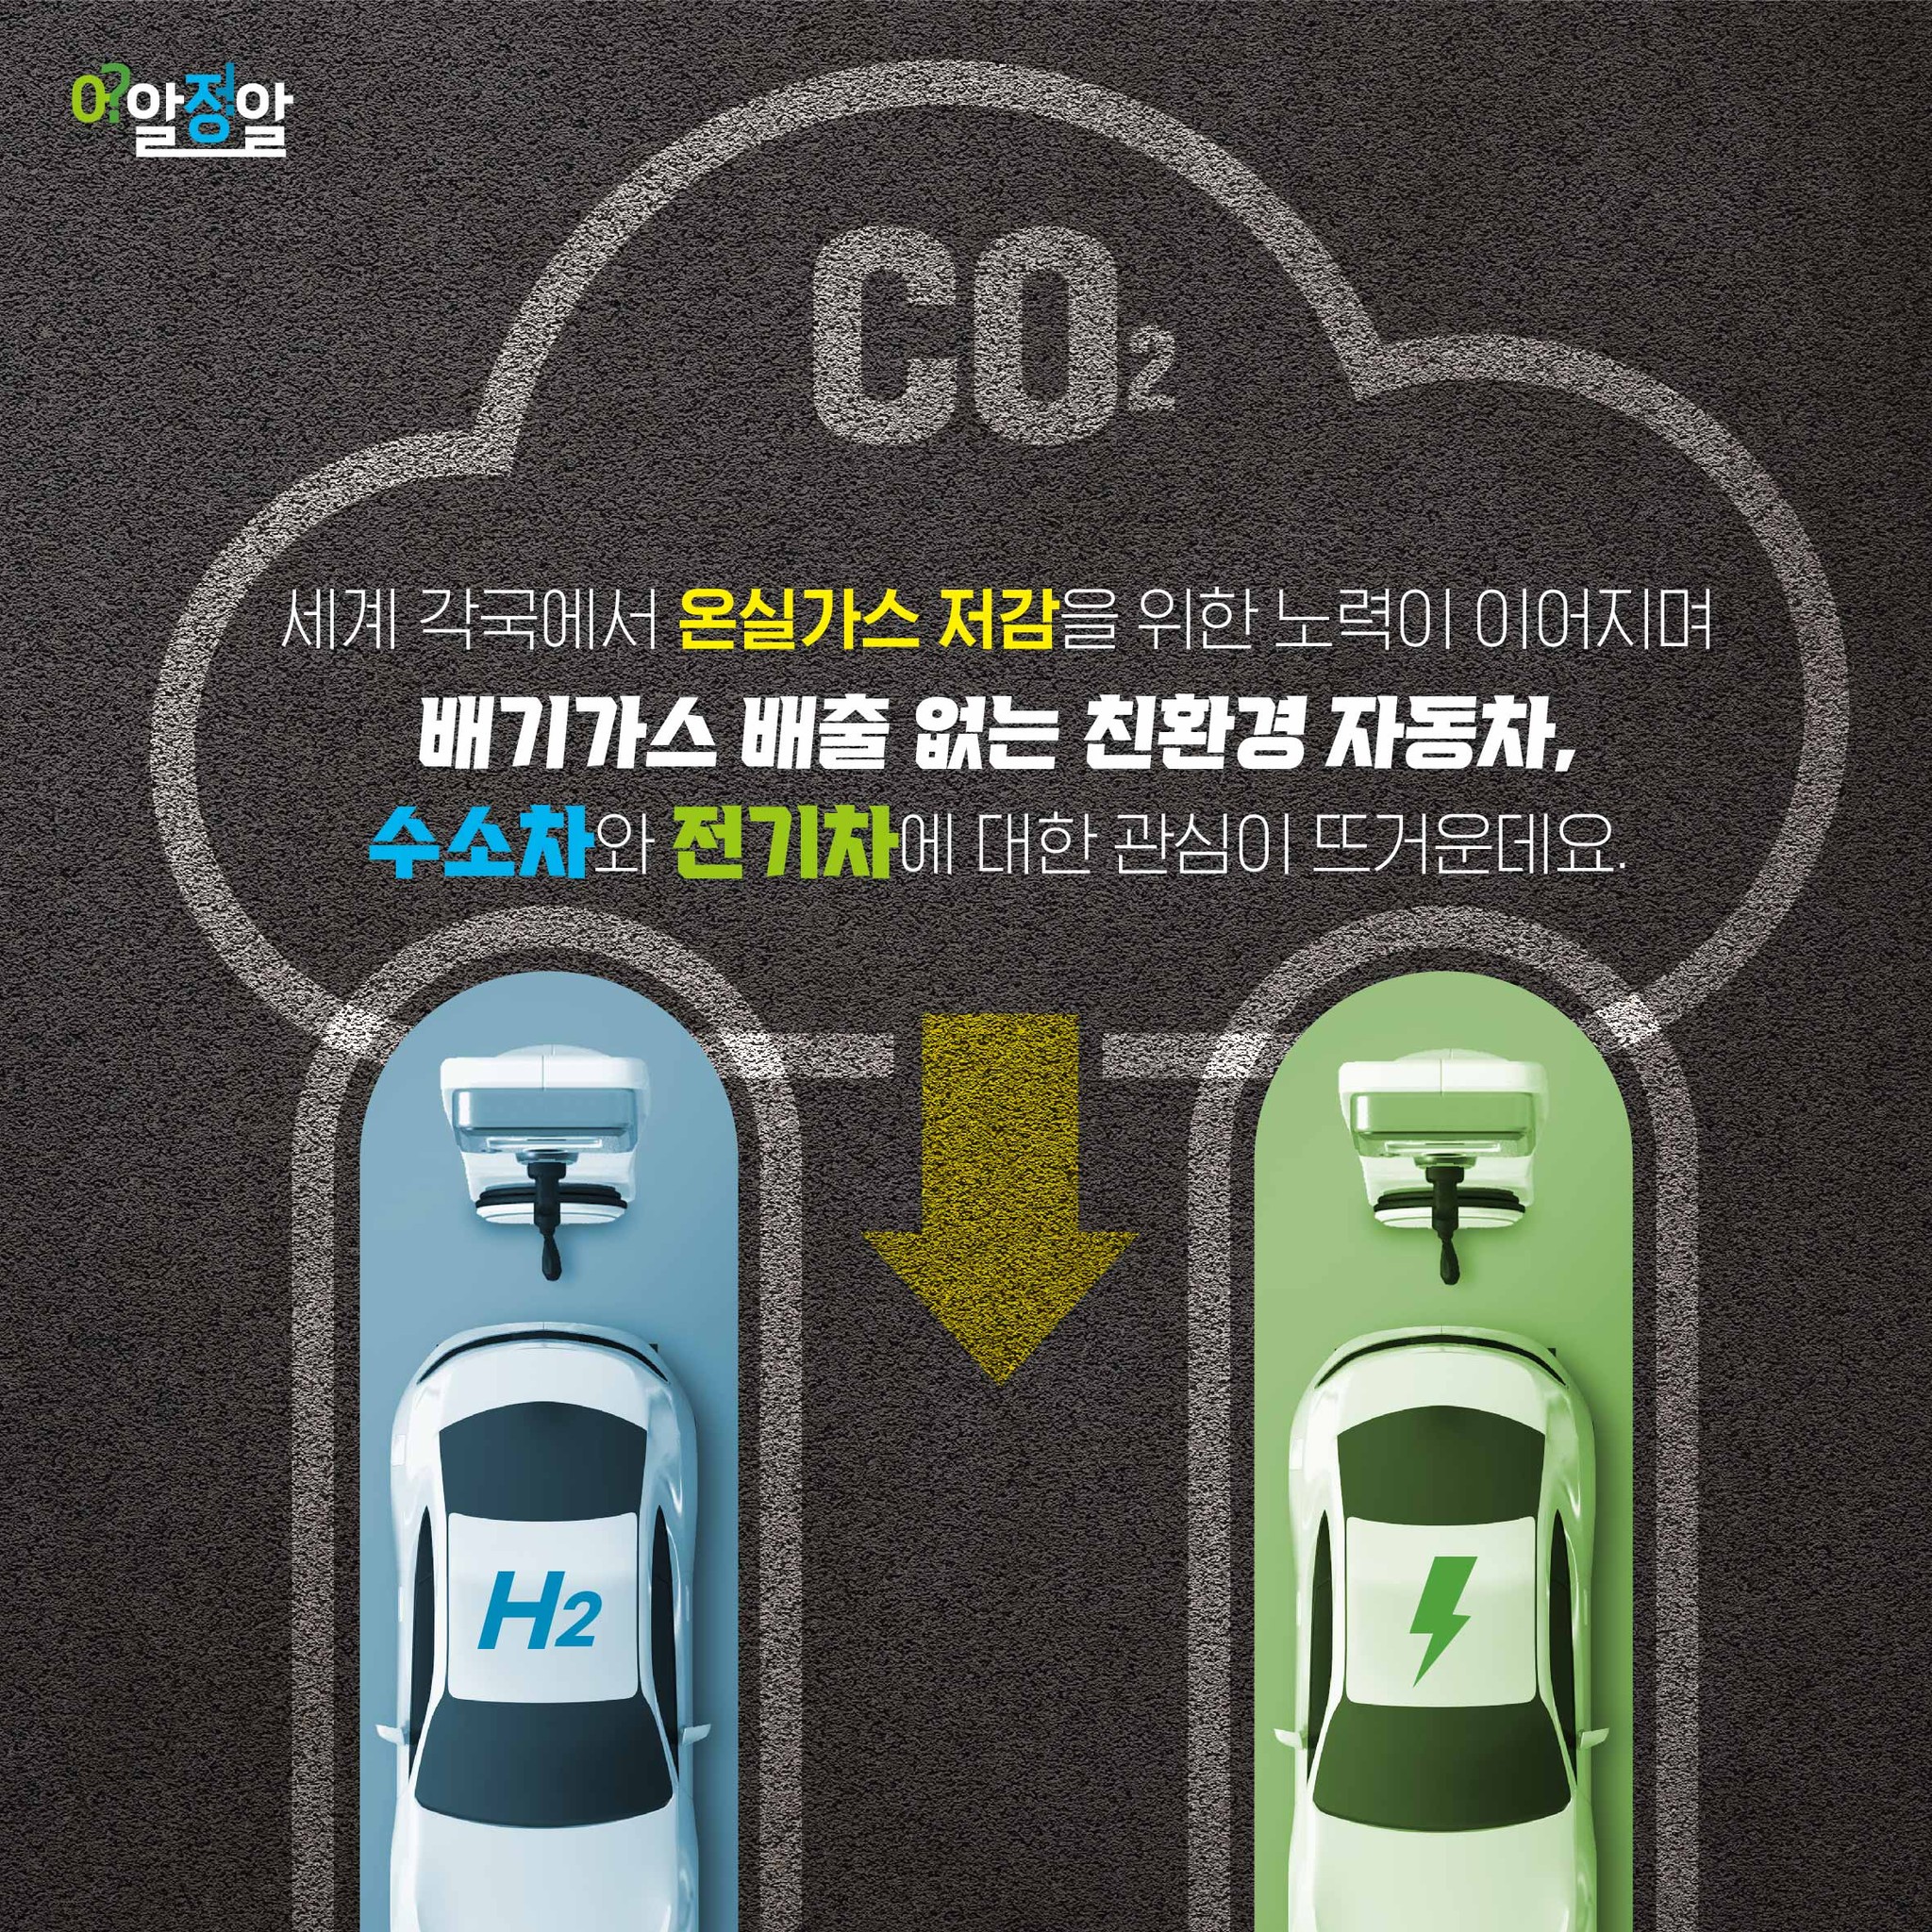 세계 각국에서 온실가스 저감을 위한 노력이 이어지며  배기가스 배출 없는 친환경 자동차,  수소차와 전기차에 대한 관심이 뜨거운데요.